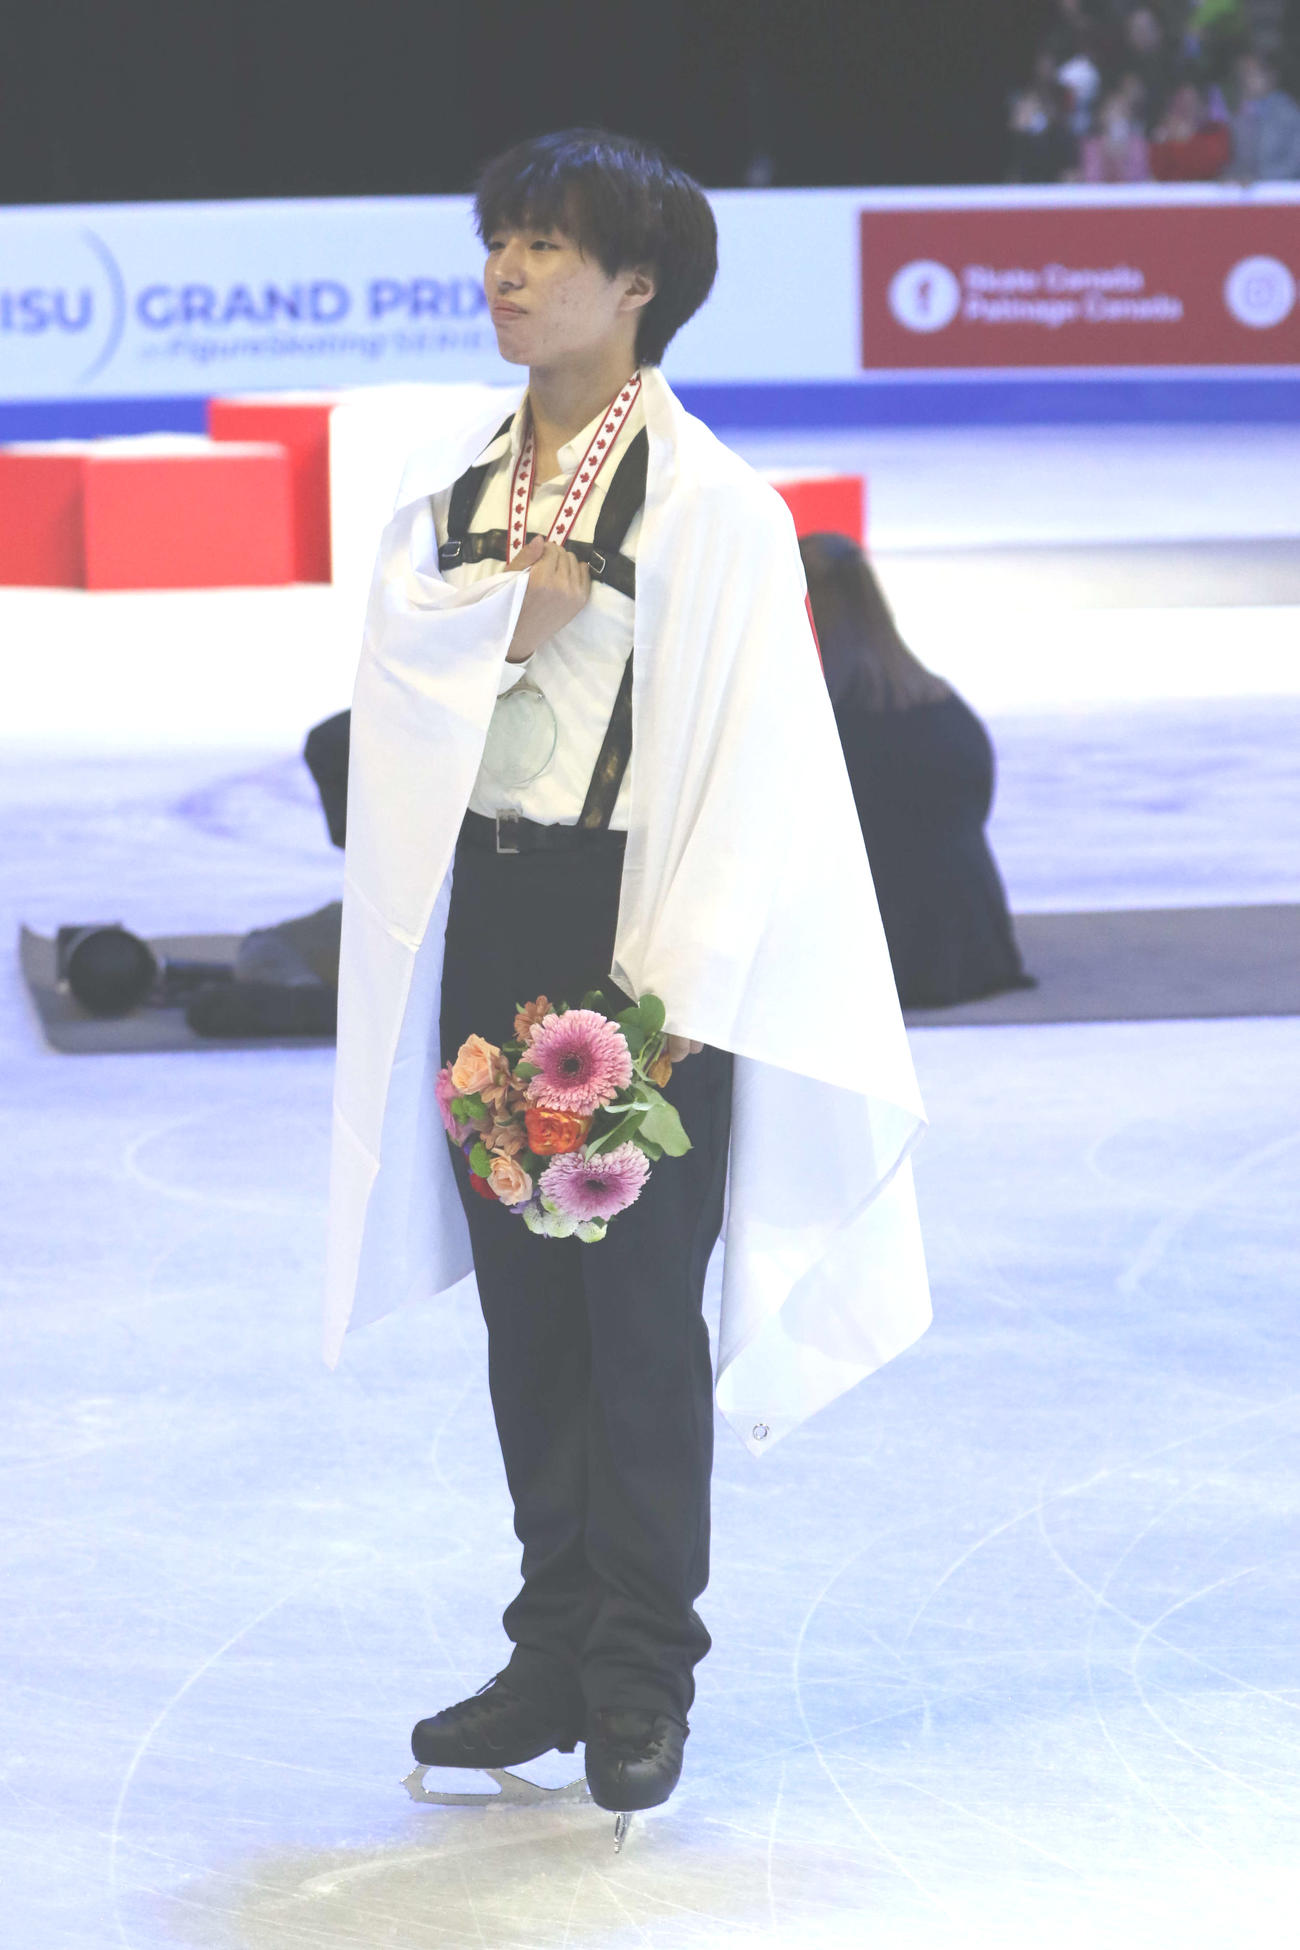 三浦は表彰式後の記念撮影でリクエストに応えて「心臓をささげよ」のポーズ